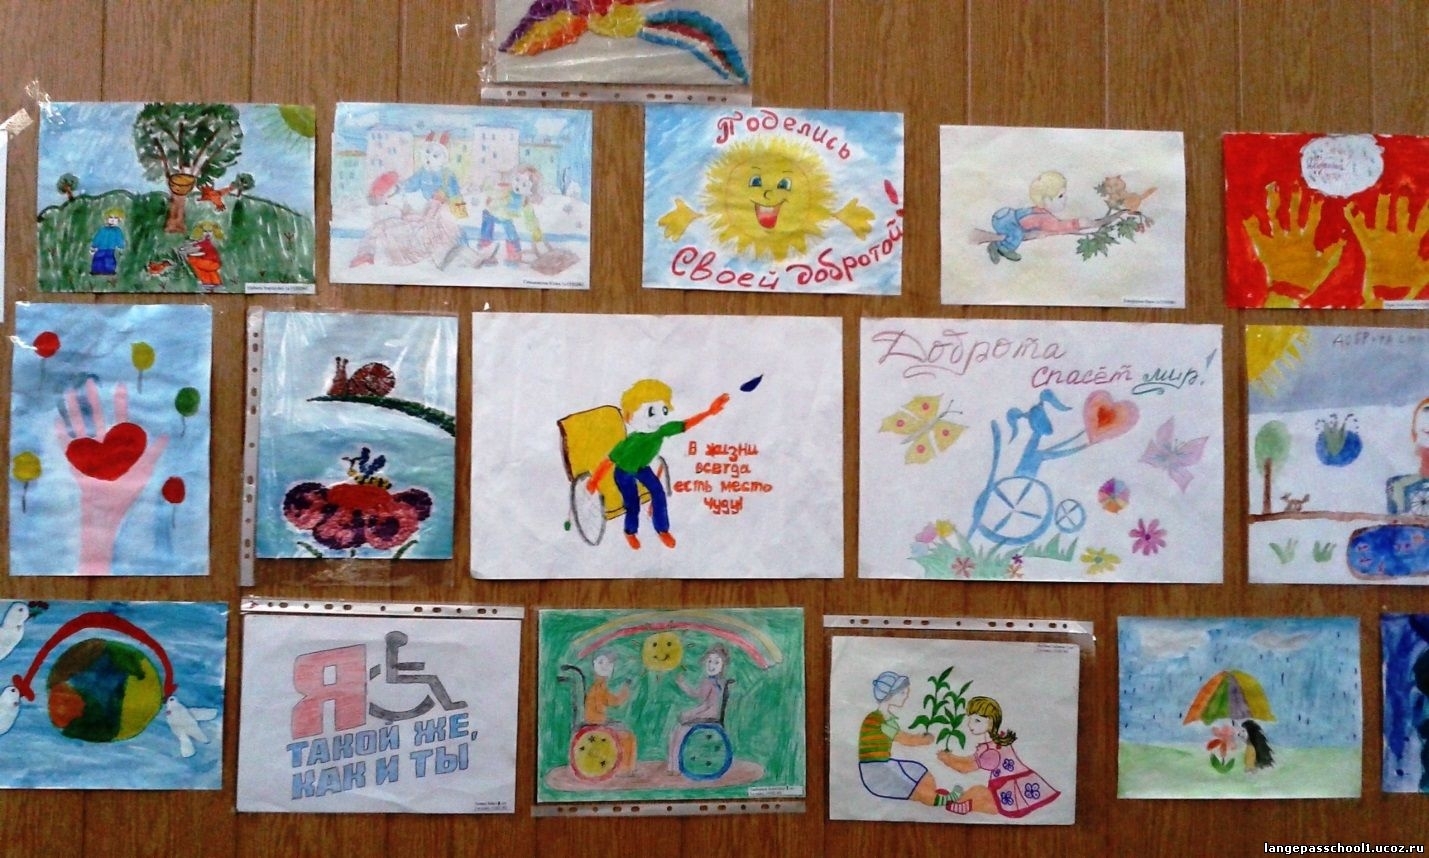 Выставки рисунков в детском саду доброта спасёт мир